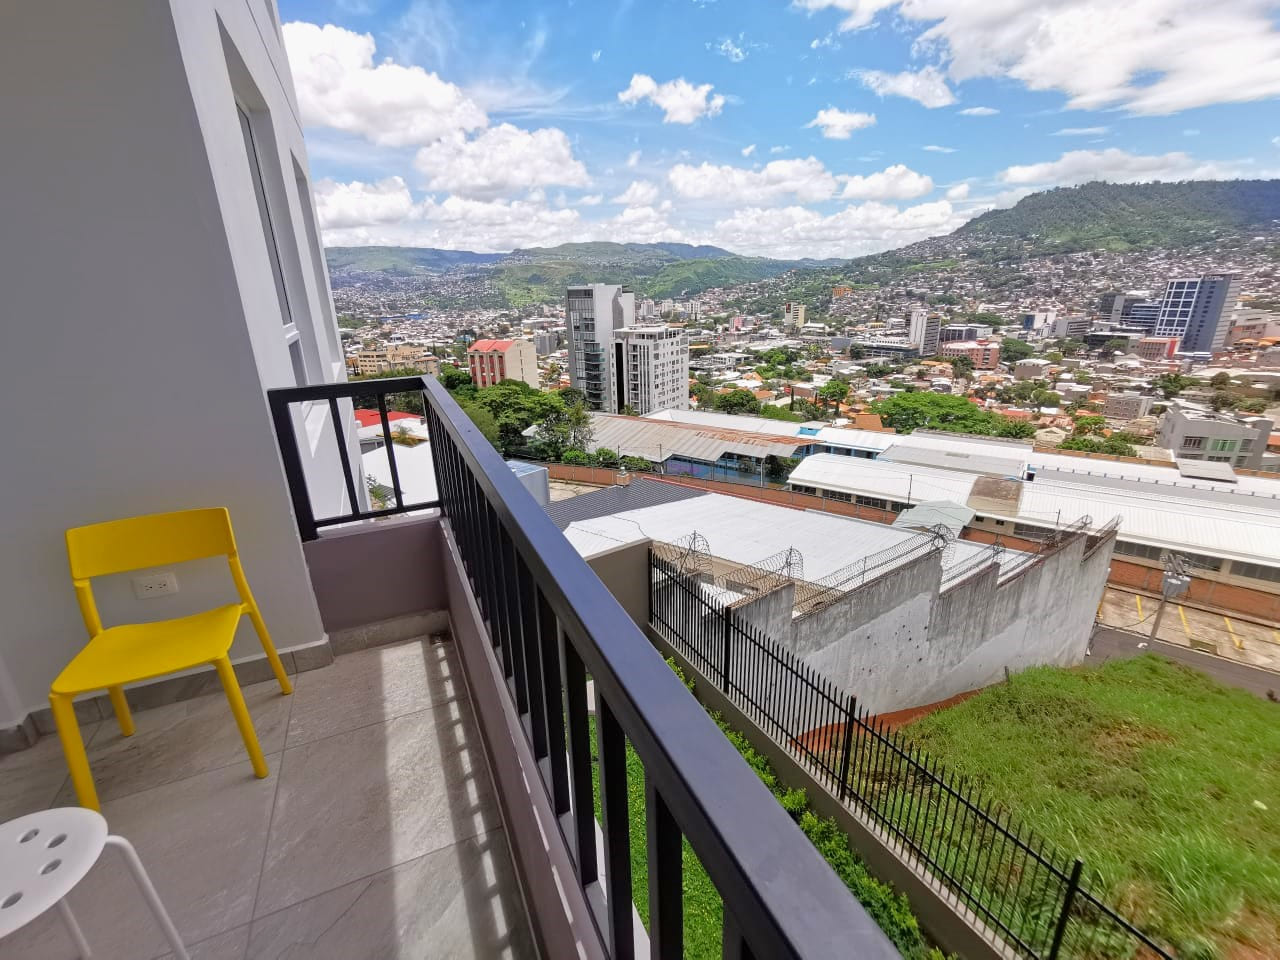 Área de terraza con puerta deslizable, cuenta con un barandal de color oscuro, sillas de color amarillo para apreciar la hermosa vista de la ciudad.